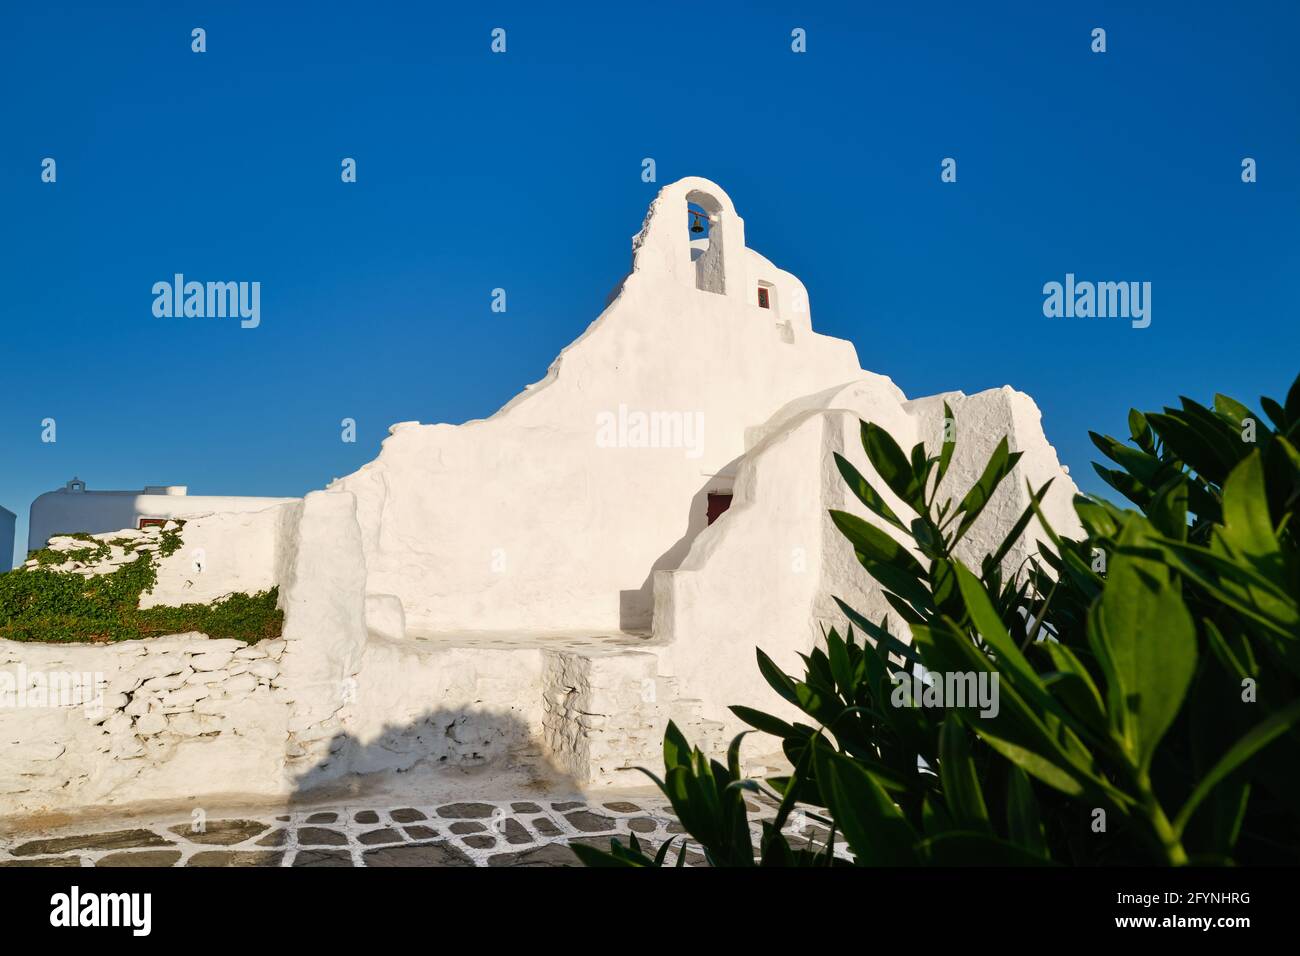 Berühmtes Touristenziel, Mykonos, Griechenland. Weiße griechisch-orthodoxe Kirche von Panagia Paraportiani, Stadt Chora auf der Insel bei Sonnenaufgang. Legendäres Reiseziel Stockfoto